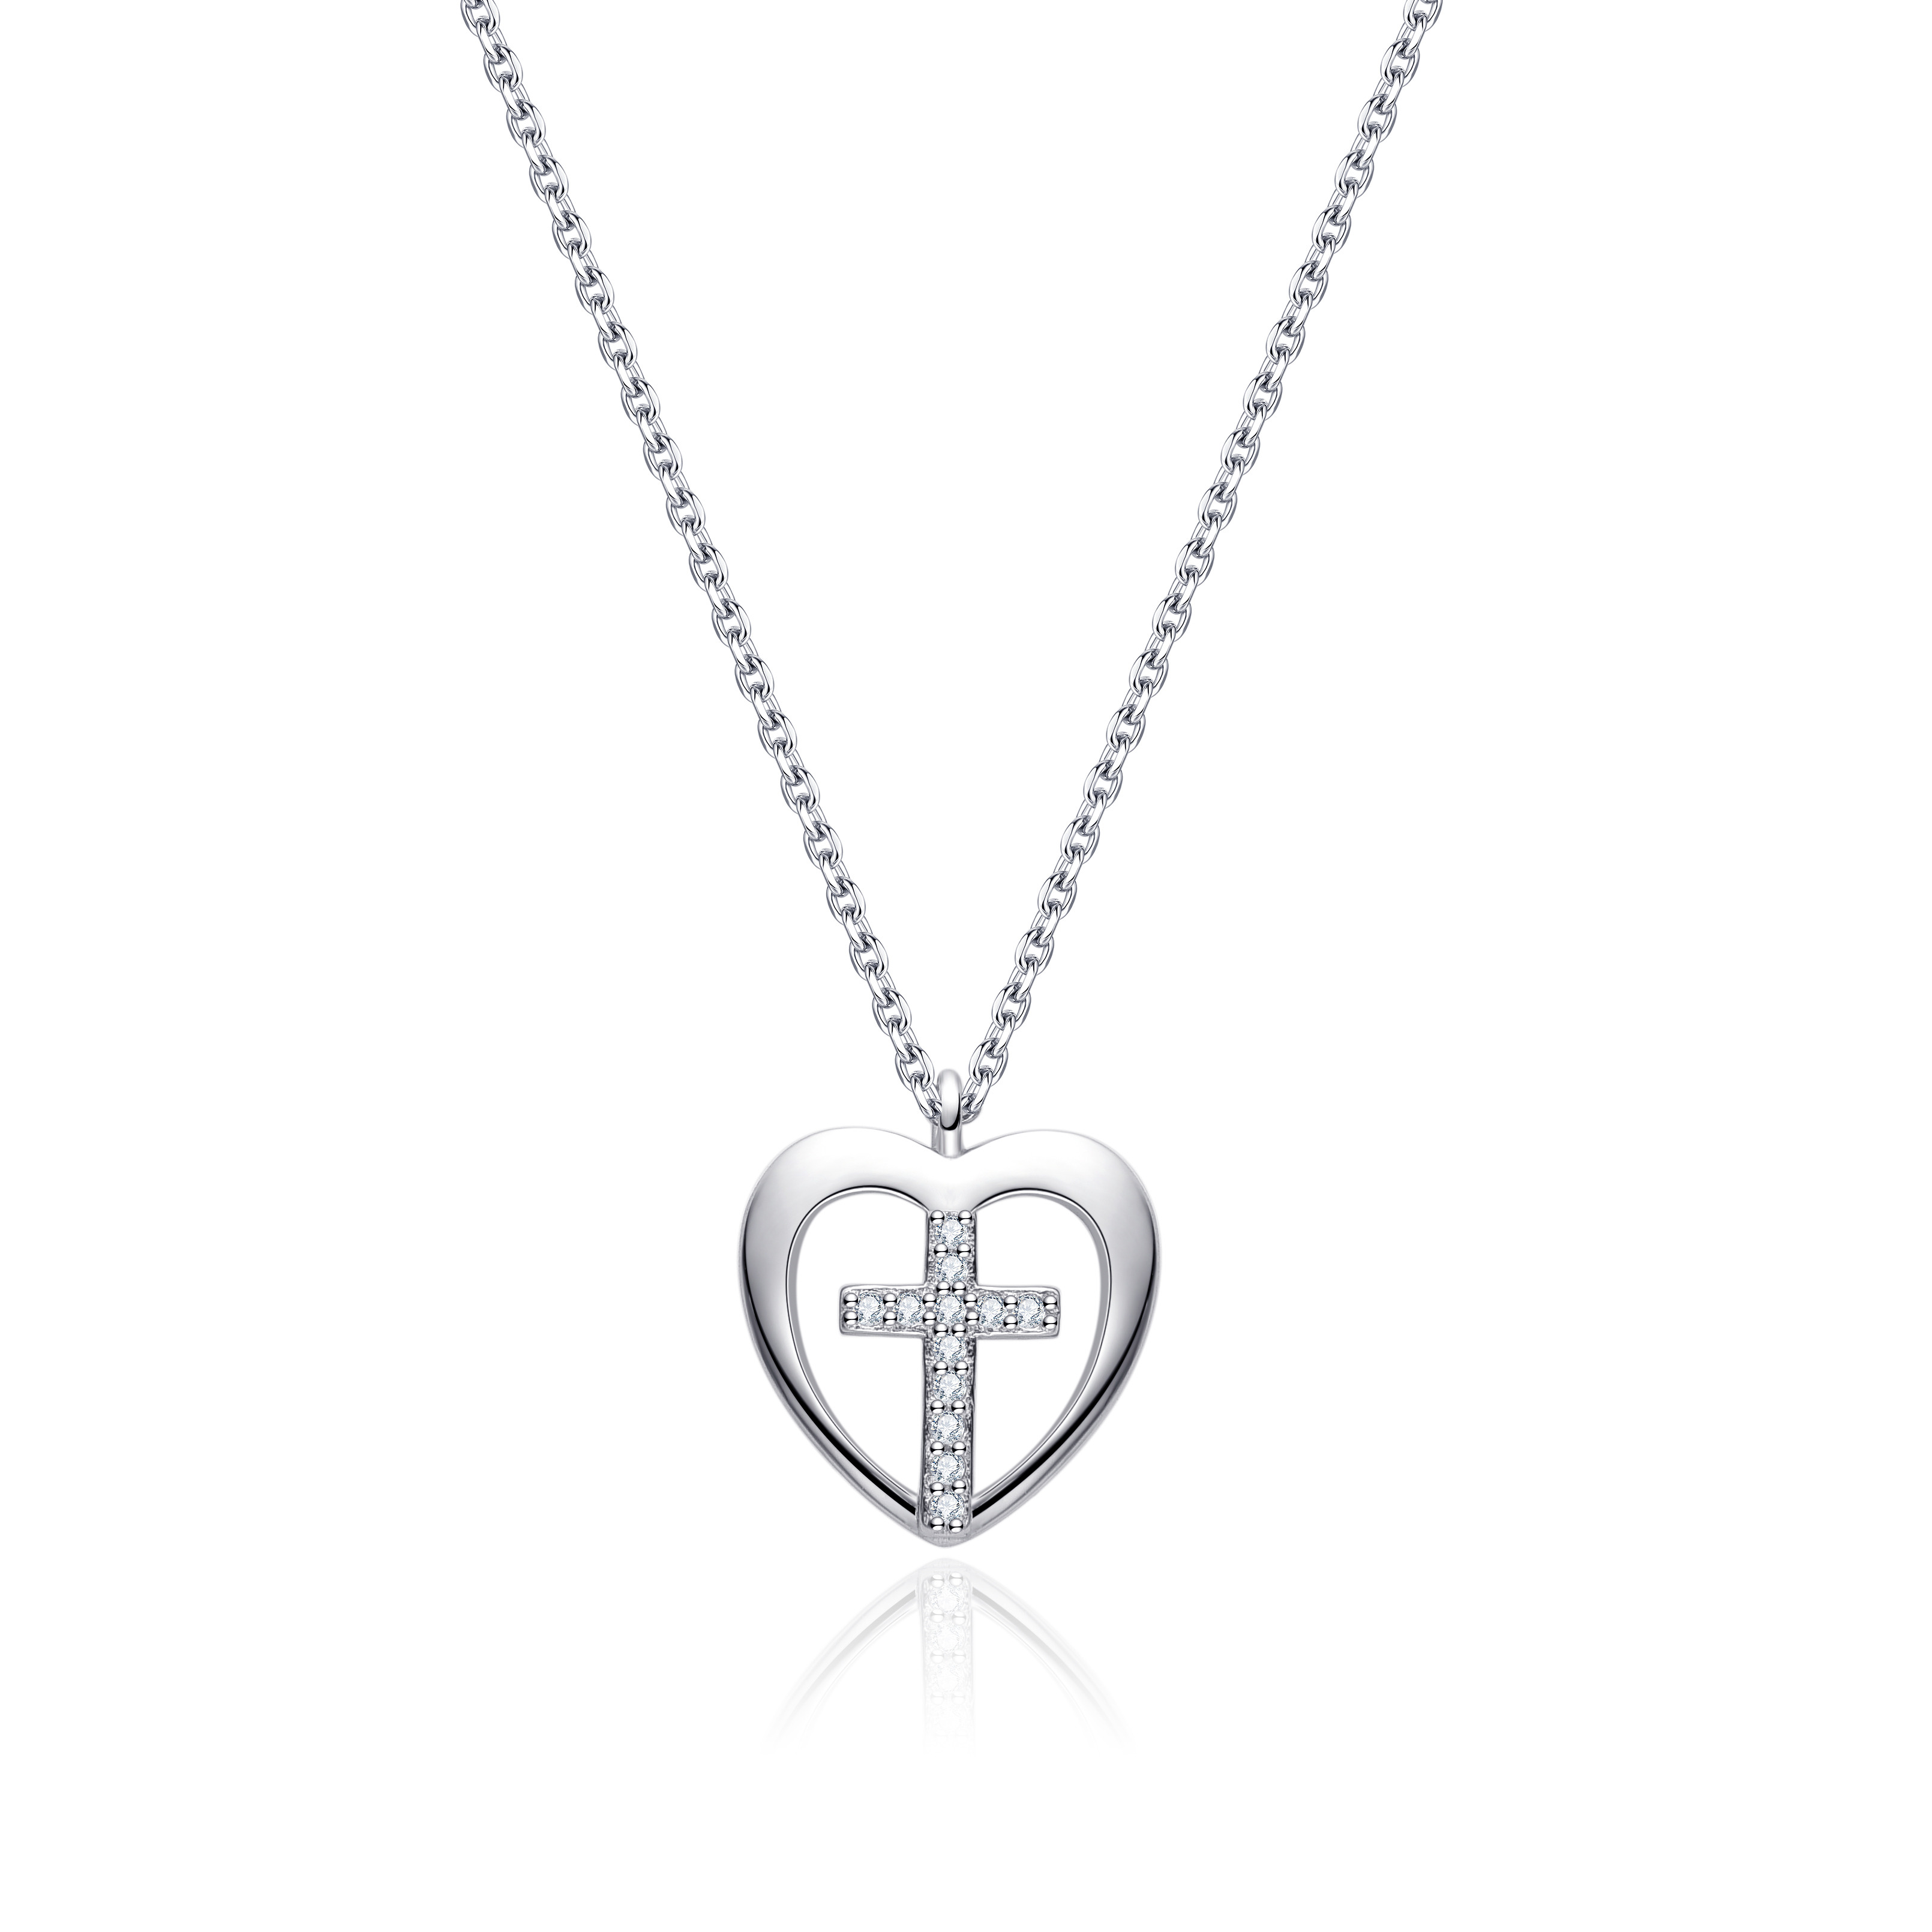 NUBIS® Střibrný náhrdelník srdce s křížkem - NB-2349